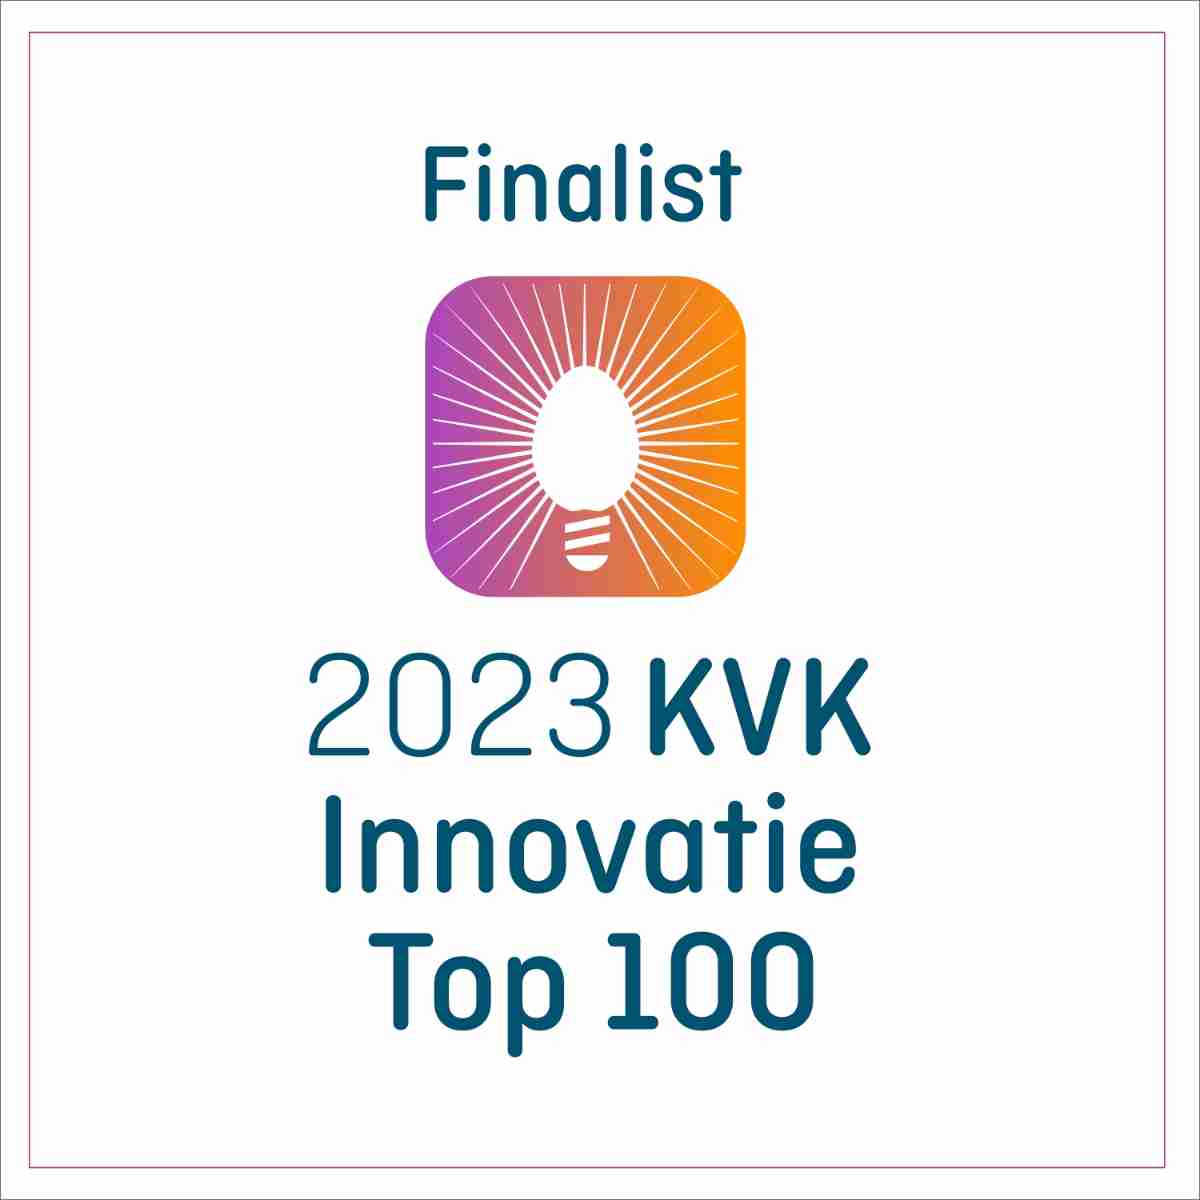 KVK Innovatie Top 100